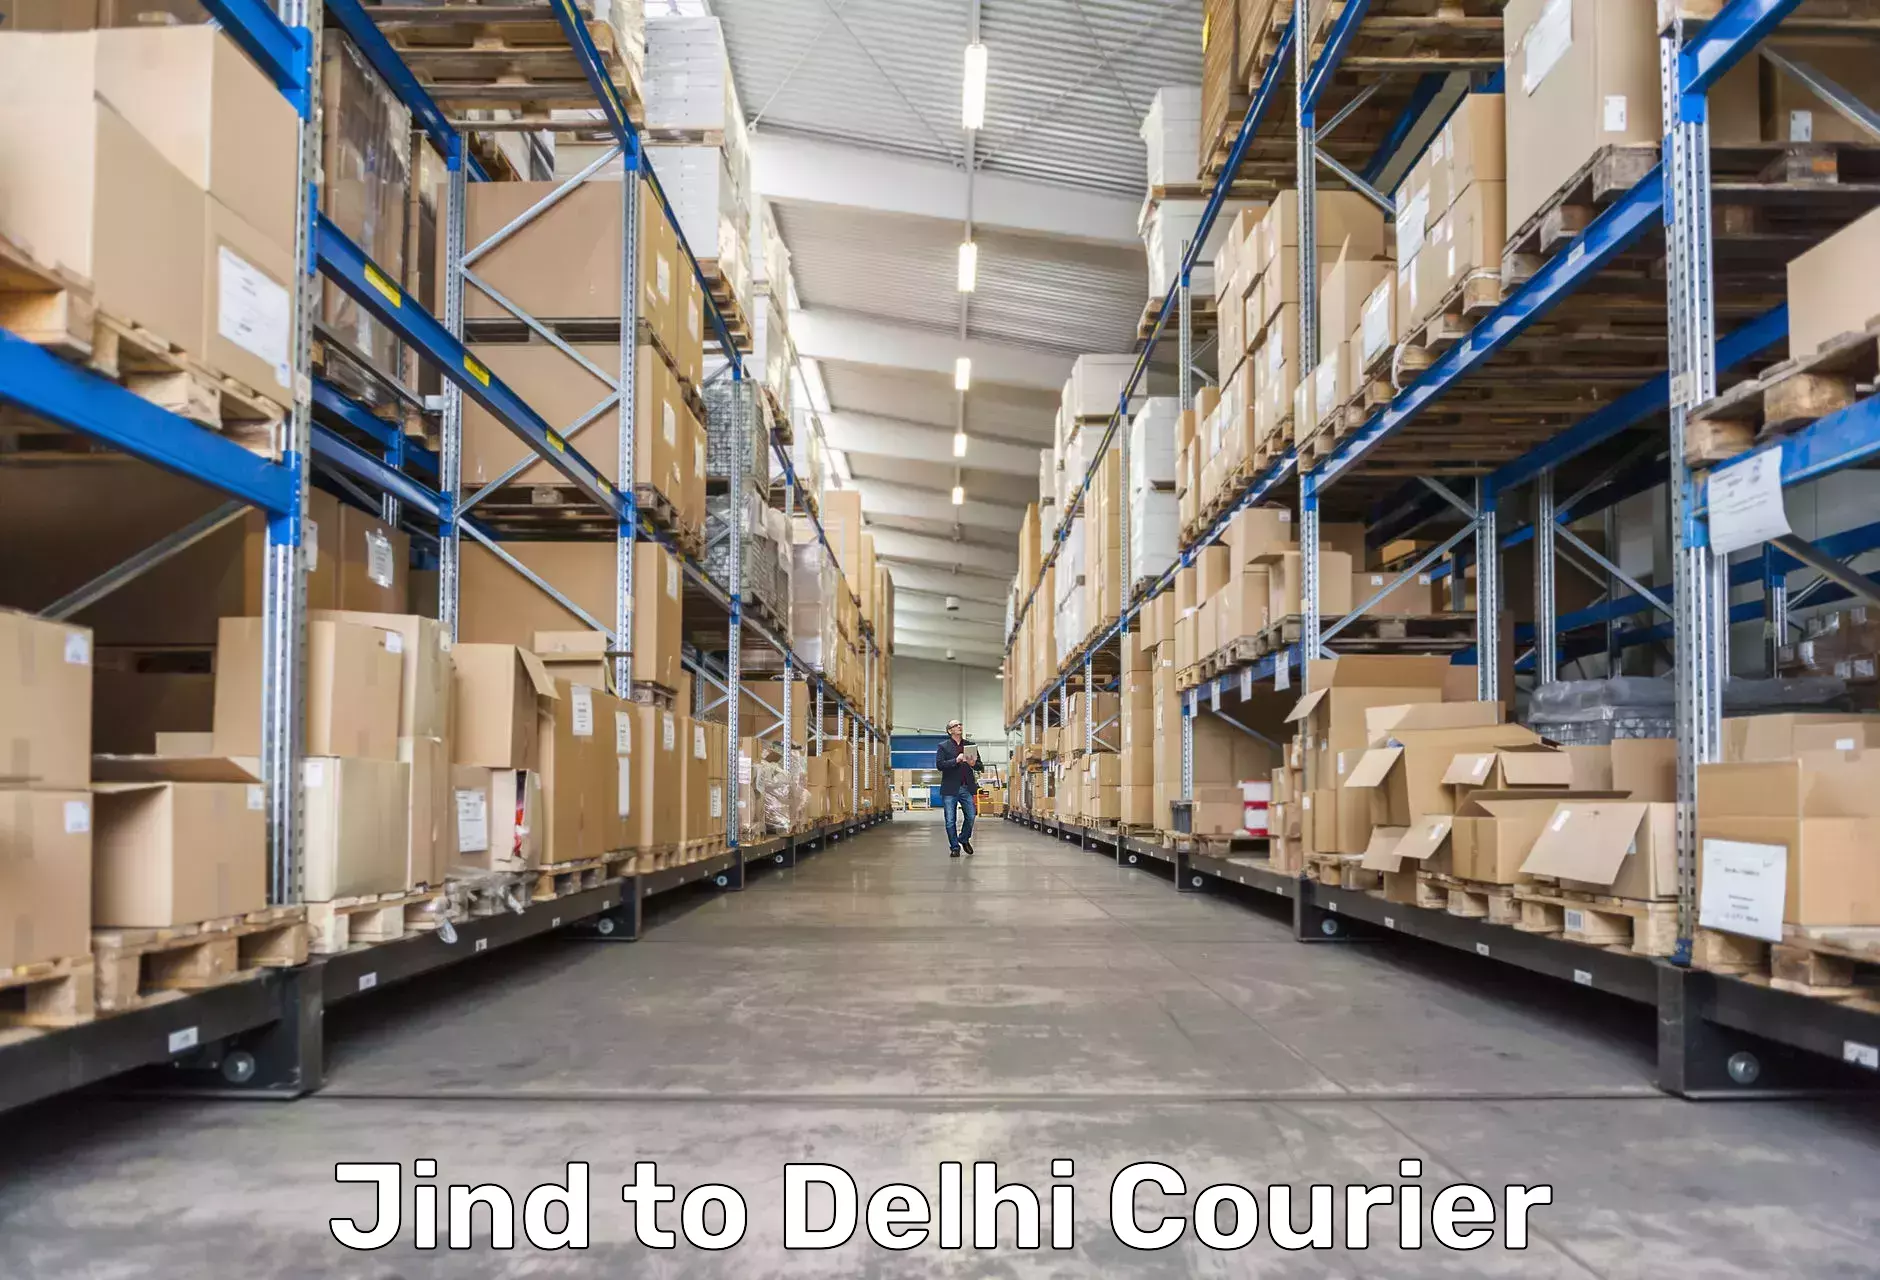 Tracking updates Jind to Delhi